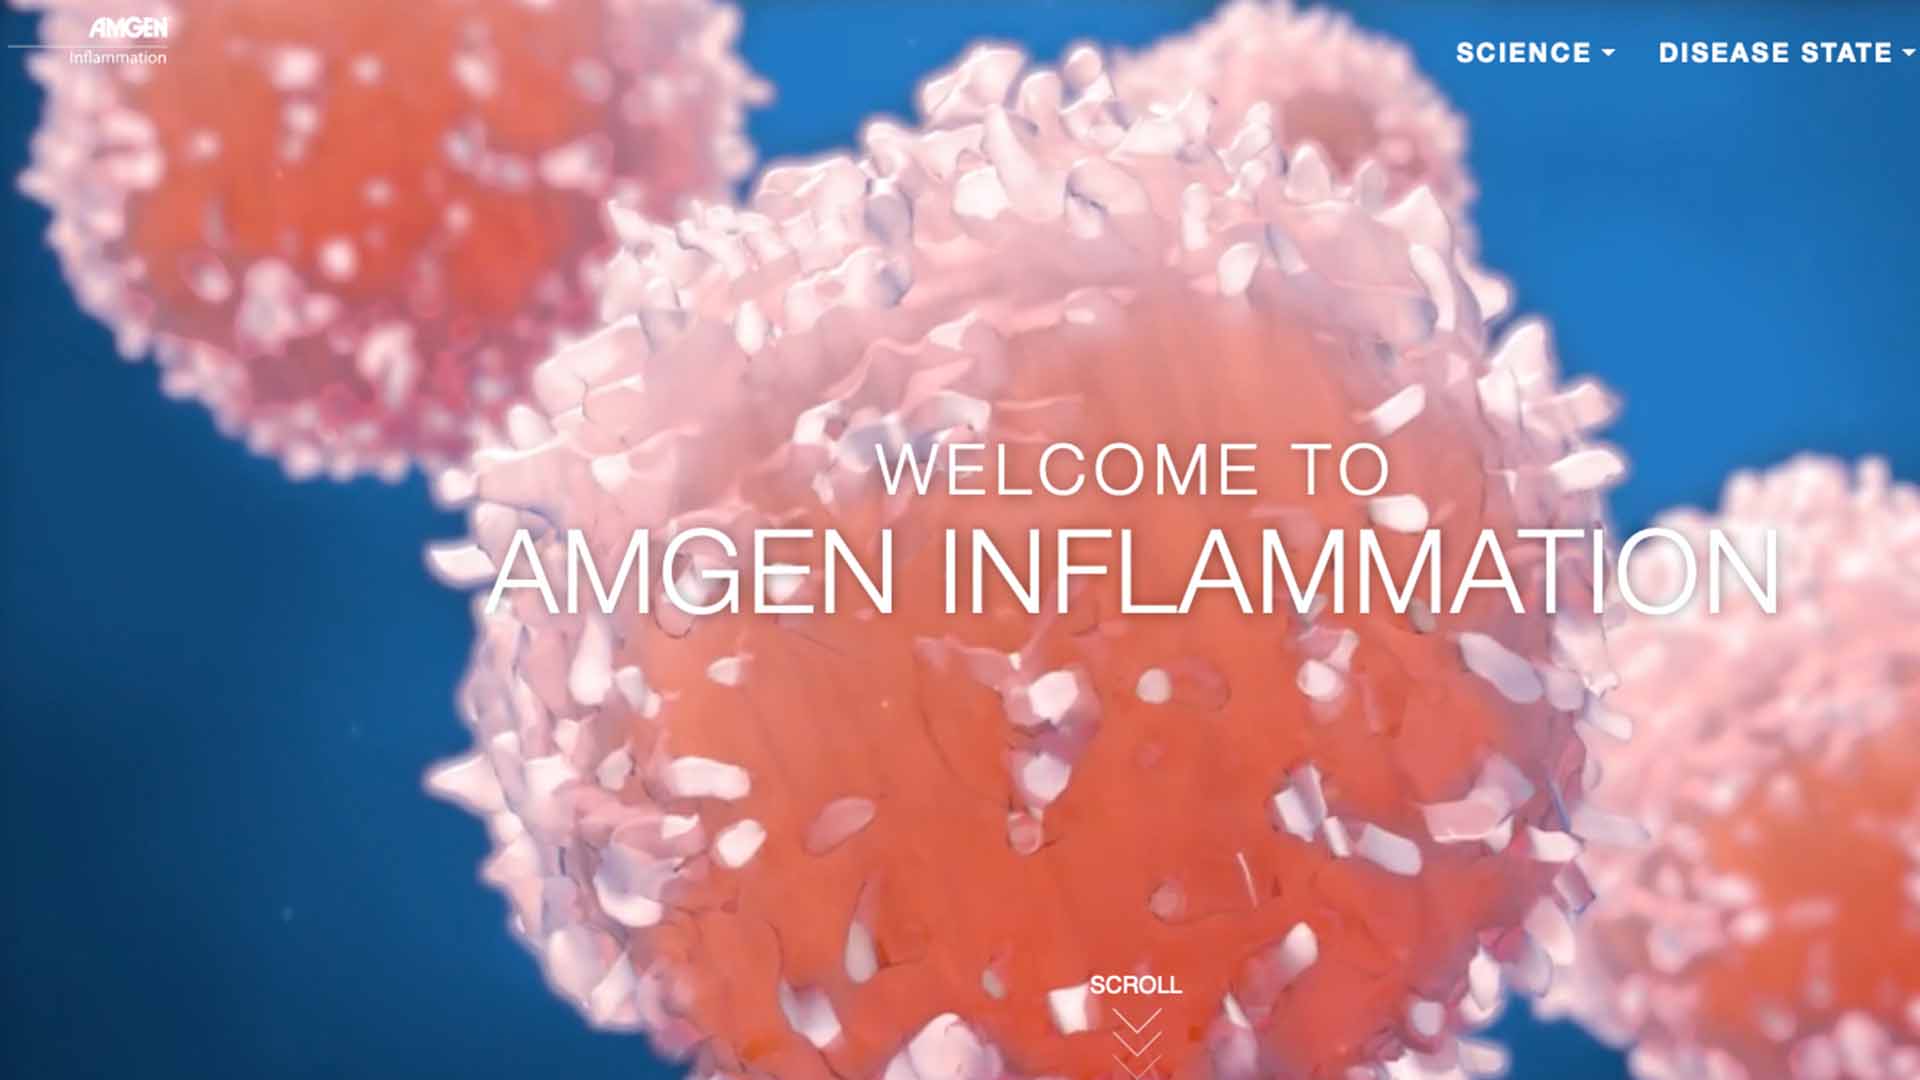 Amgen Inflammation Website